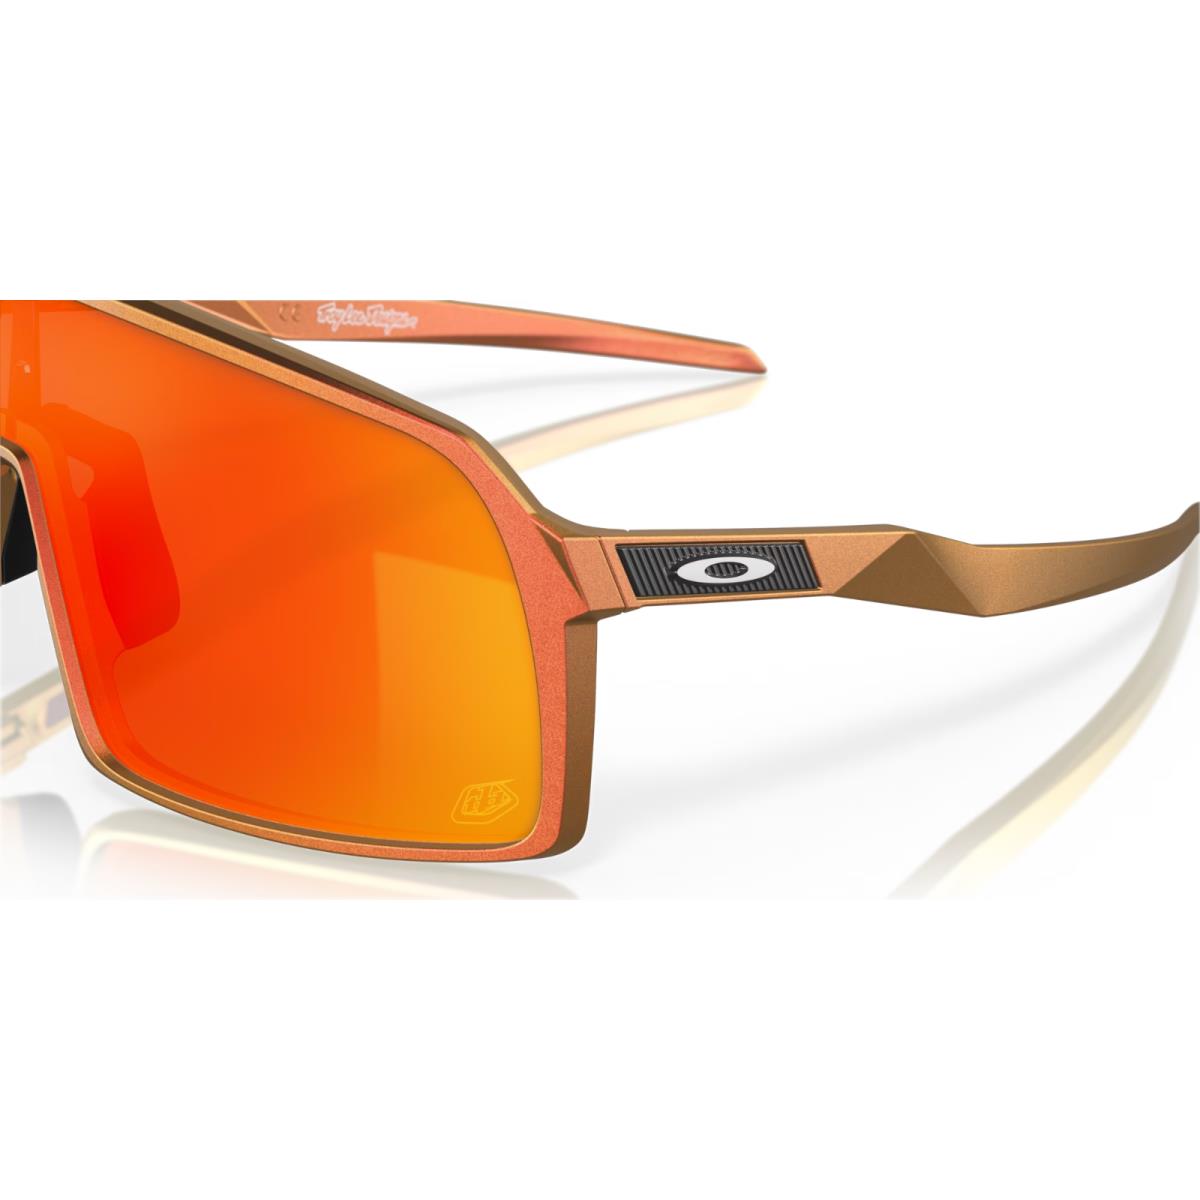 Oakley sunglasses  - Frame: Red Gold Shift, Lens: 2